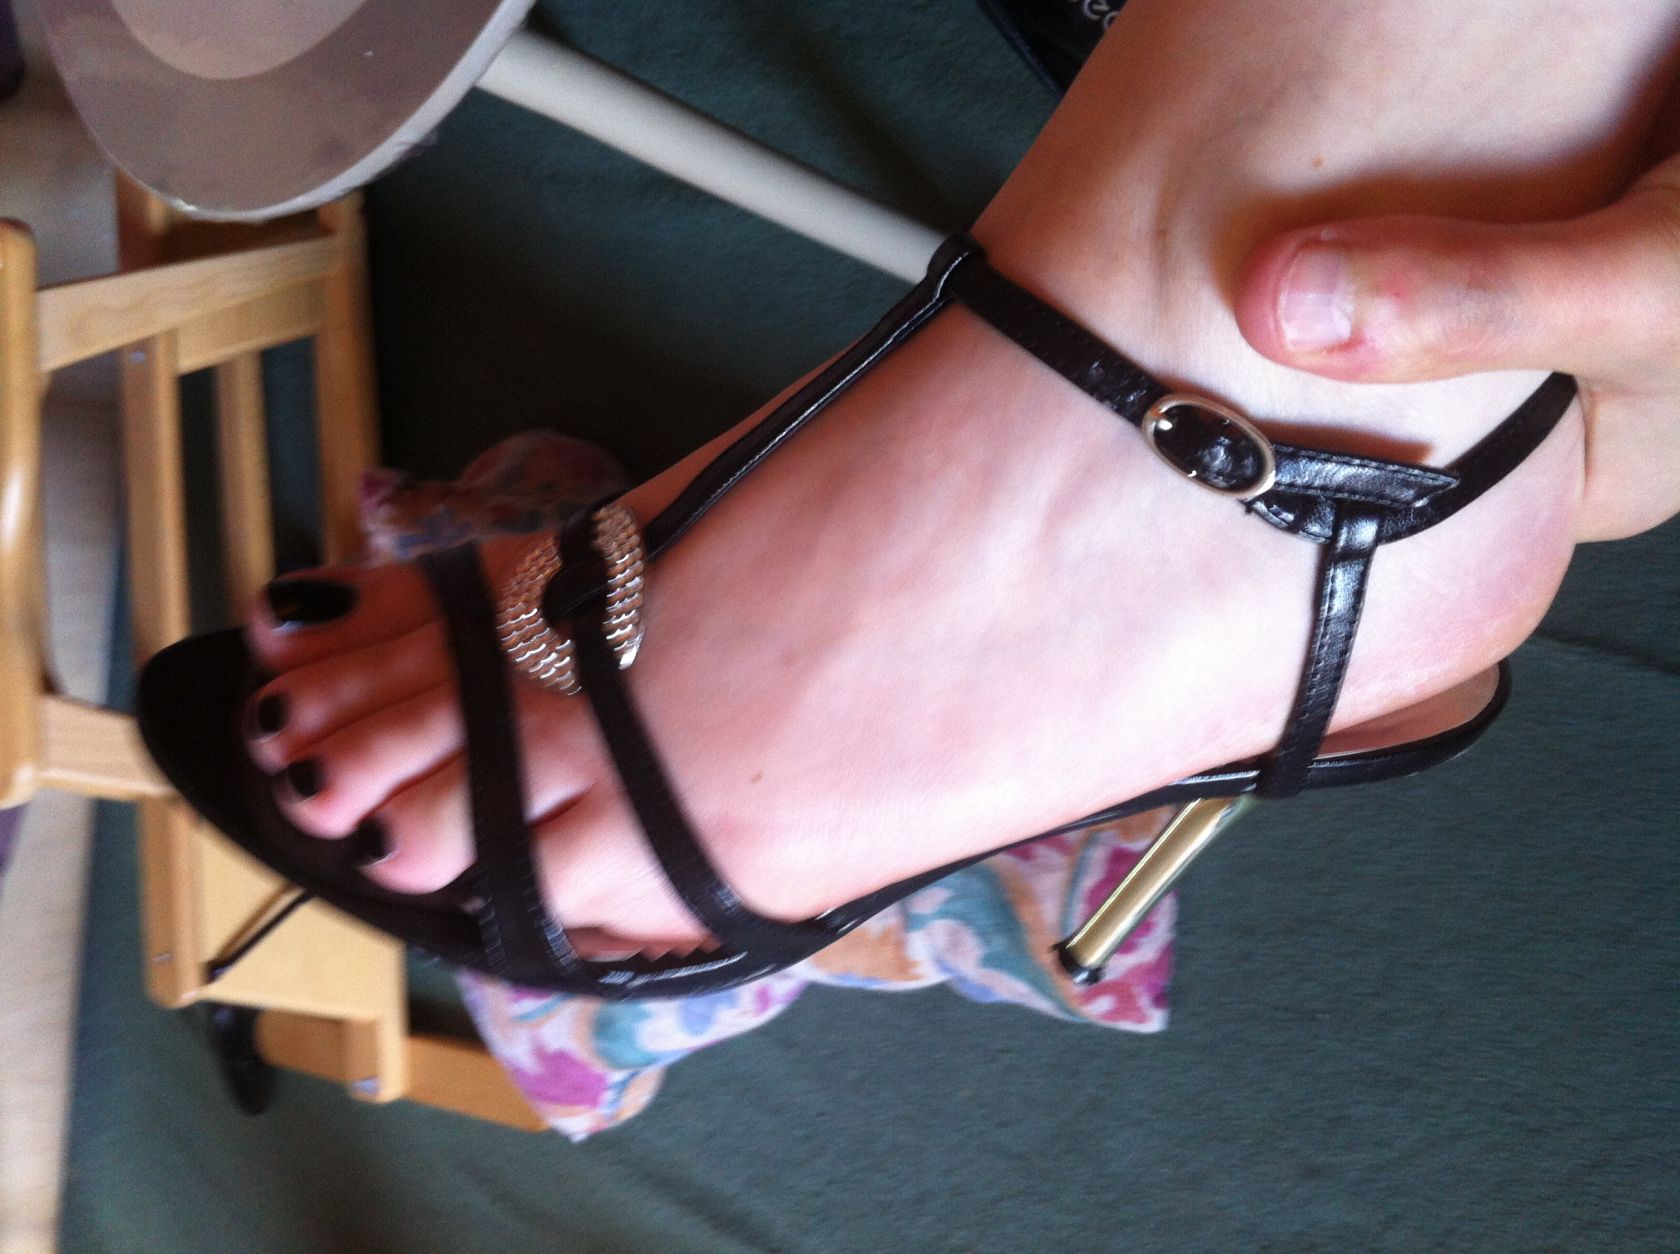 My wife's heels17